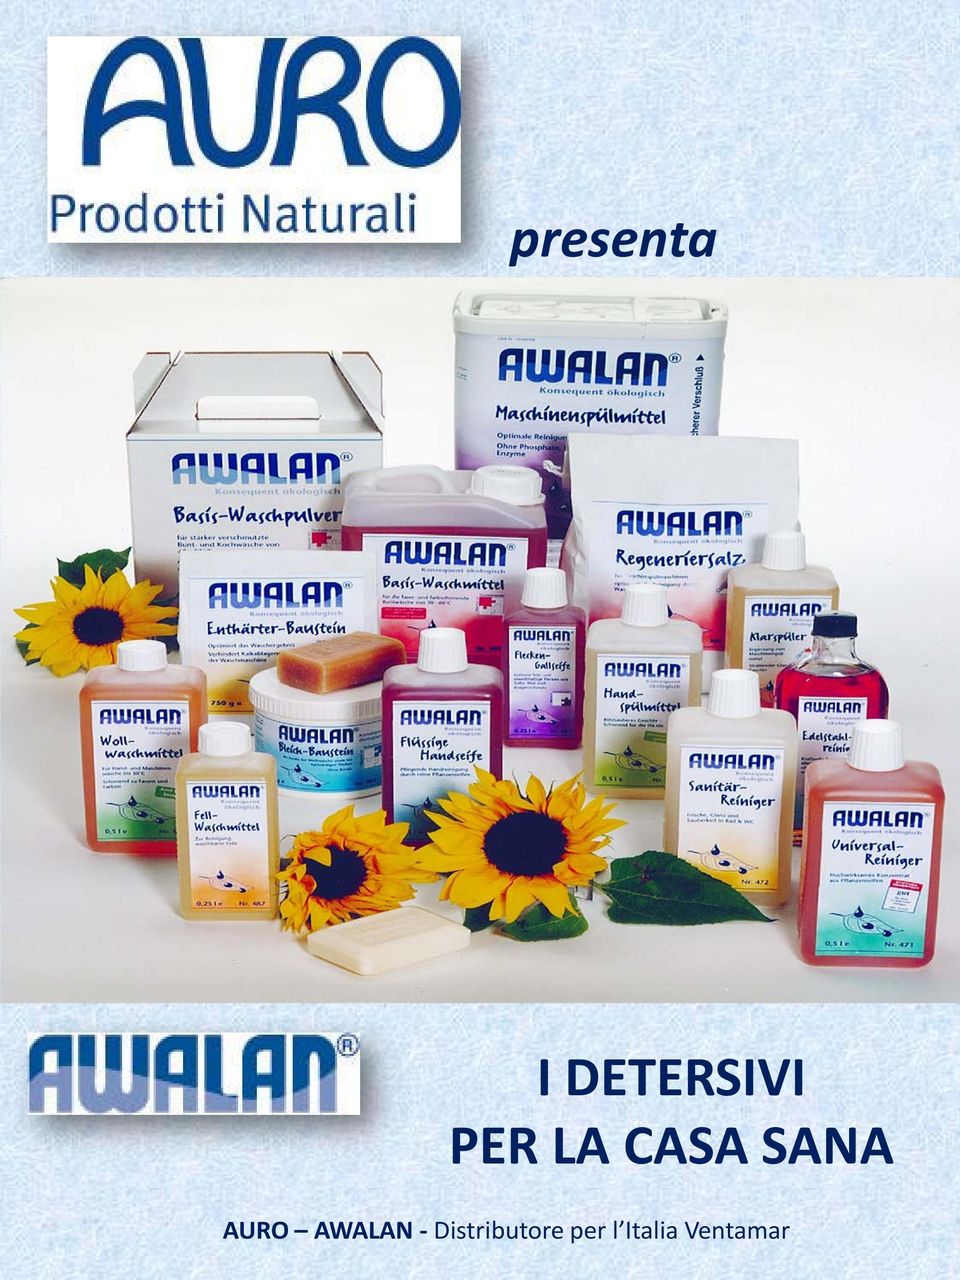 AWALAN - Distributore